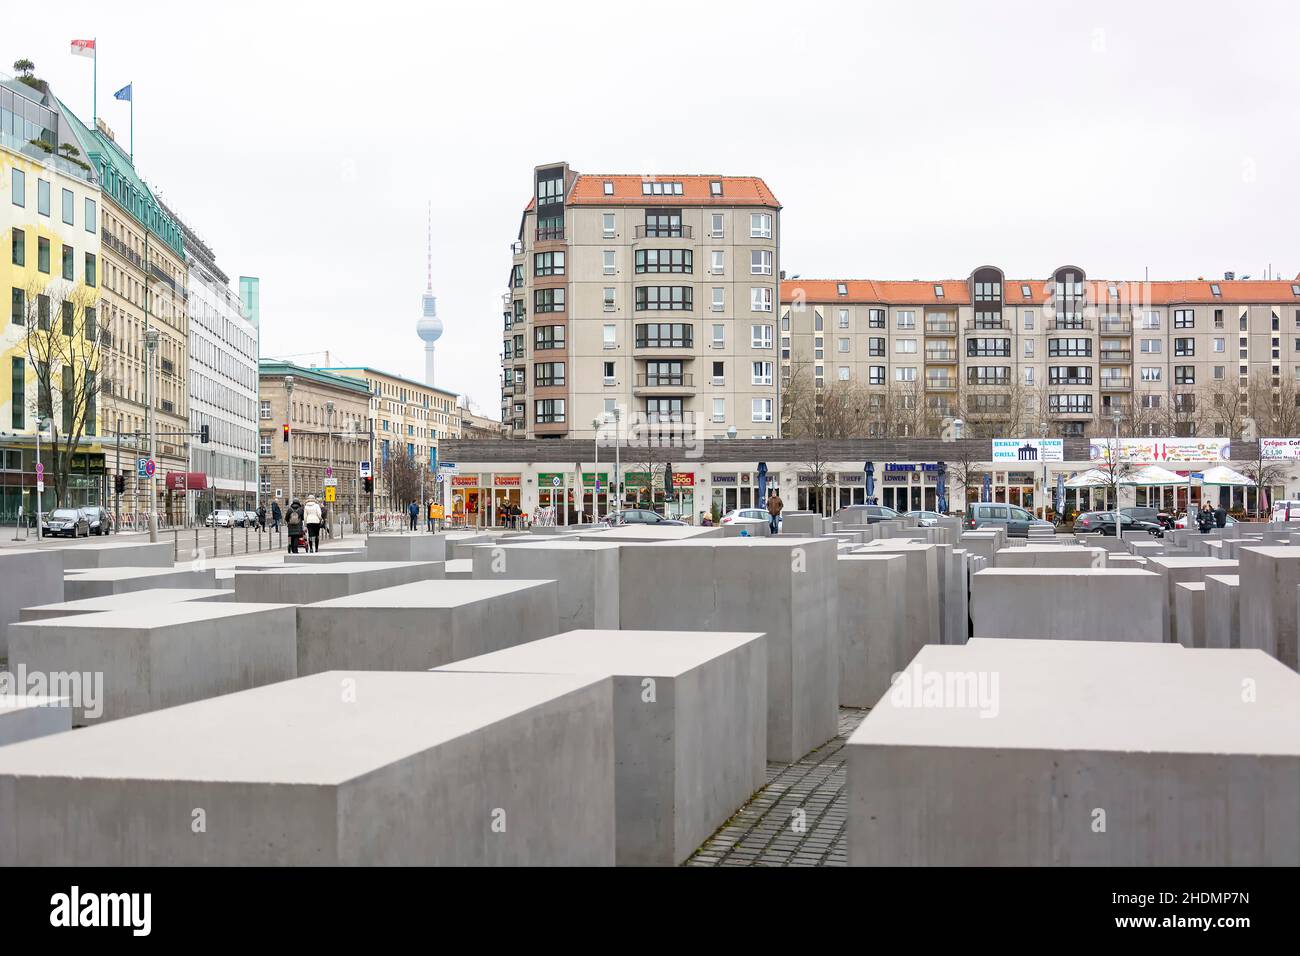 denkmal für die ermordeten juden europas, Holocaust-Denkmäler, Holocaust-Mahnmal, Denkmal für die ermordeten juden Europas, Holocaust Stockfoto